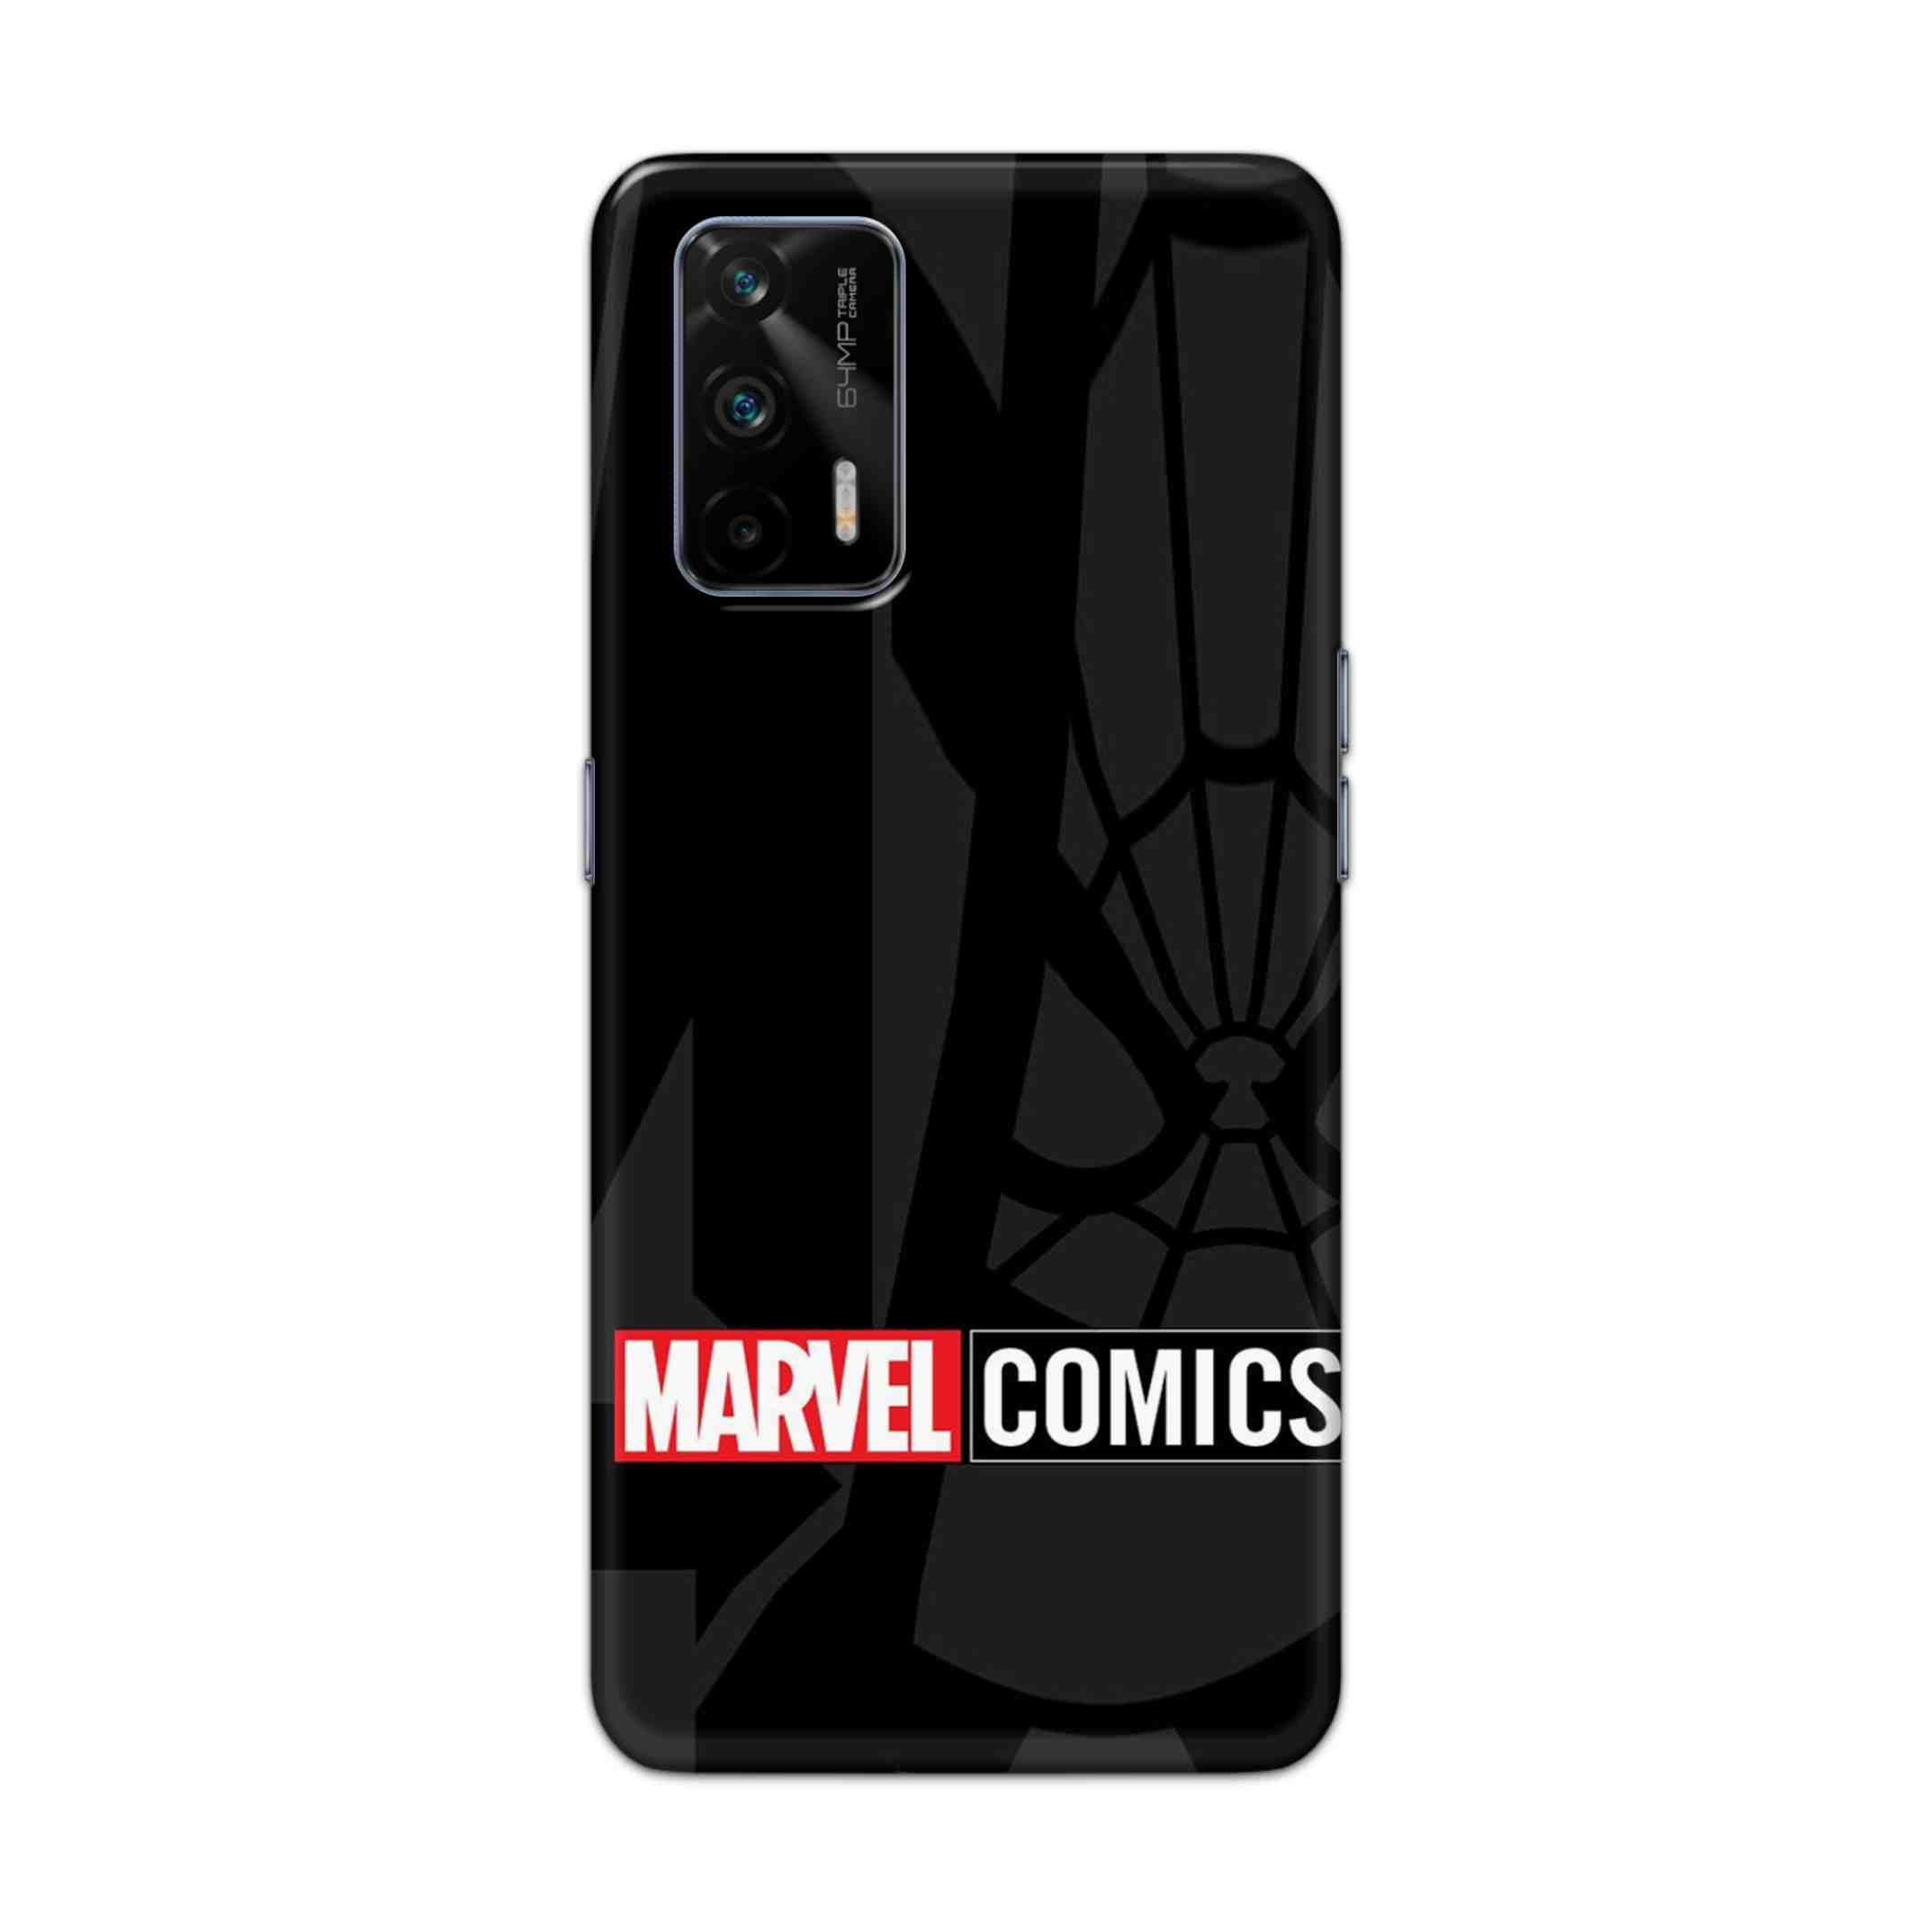 Buy Marvel Comics Hard Back Mobile Phone Case Cover For Realme GT 5G Online